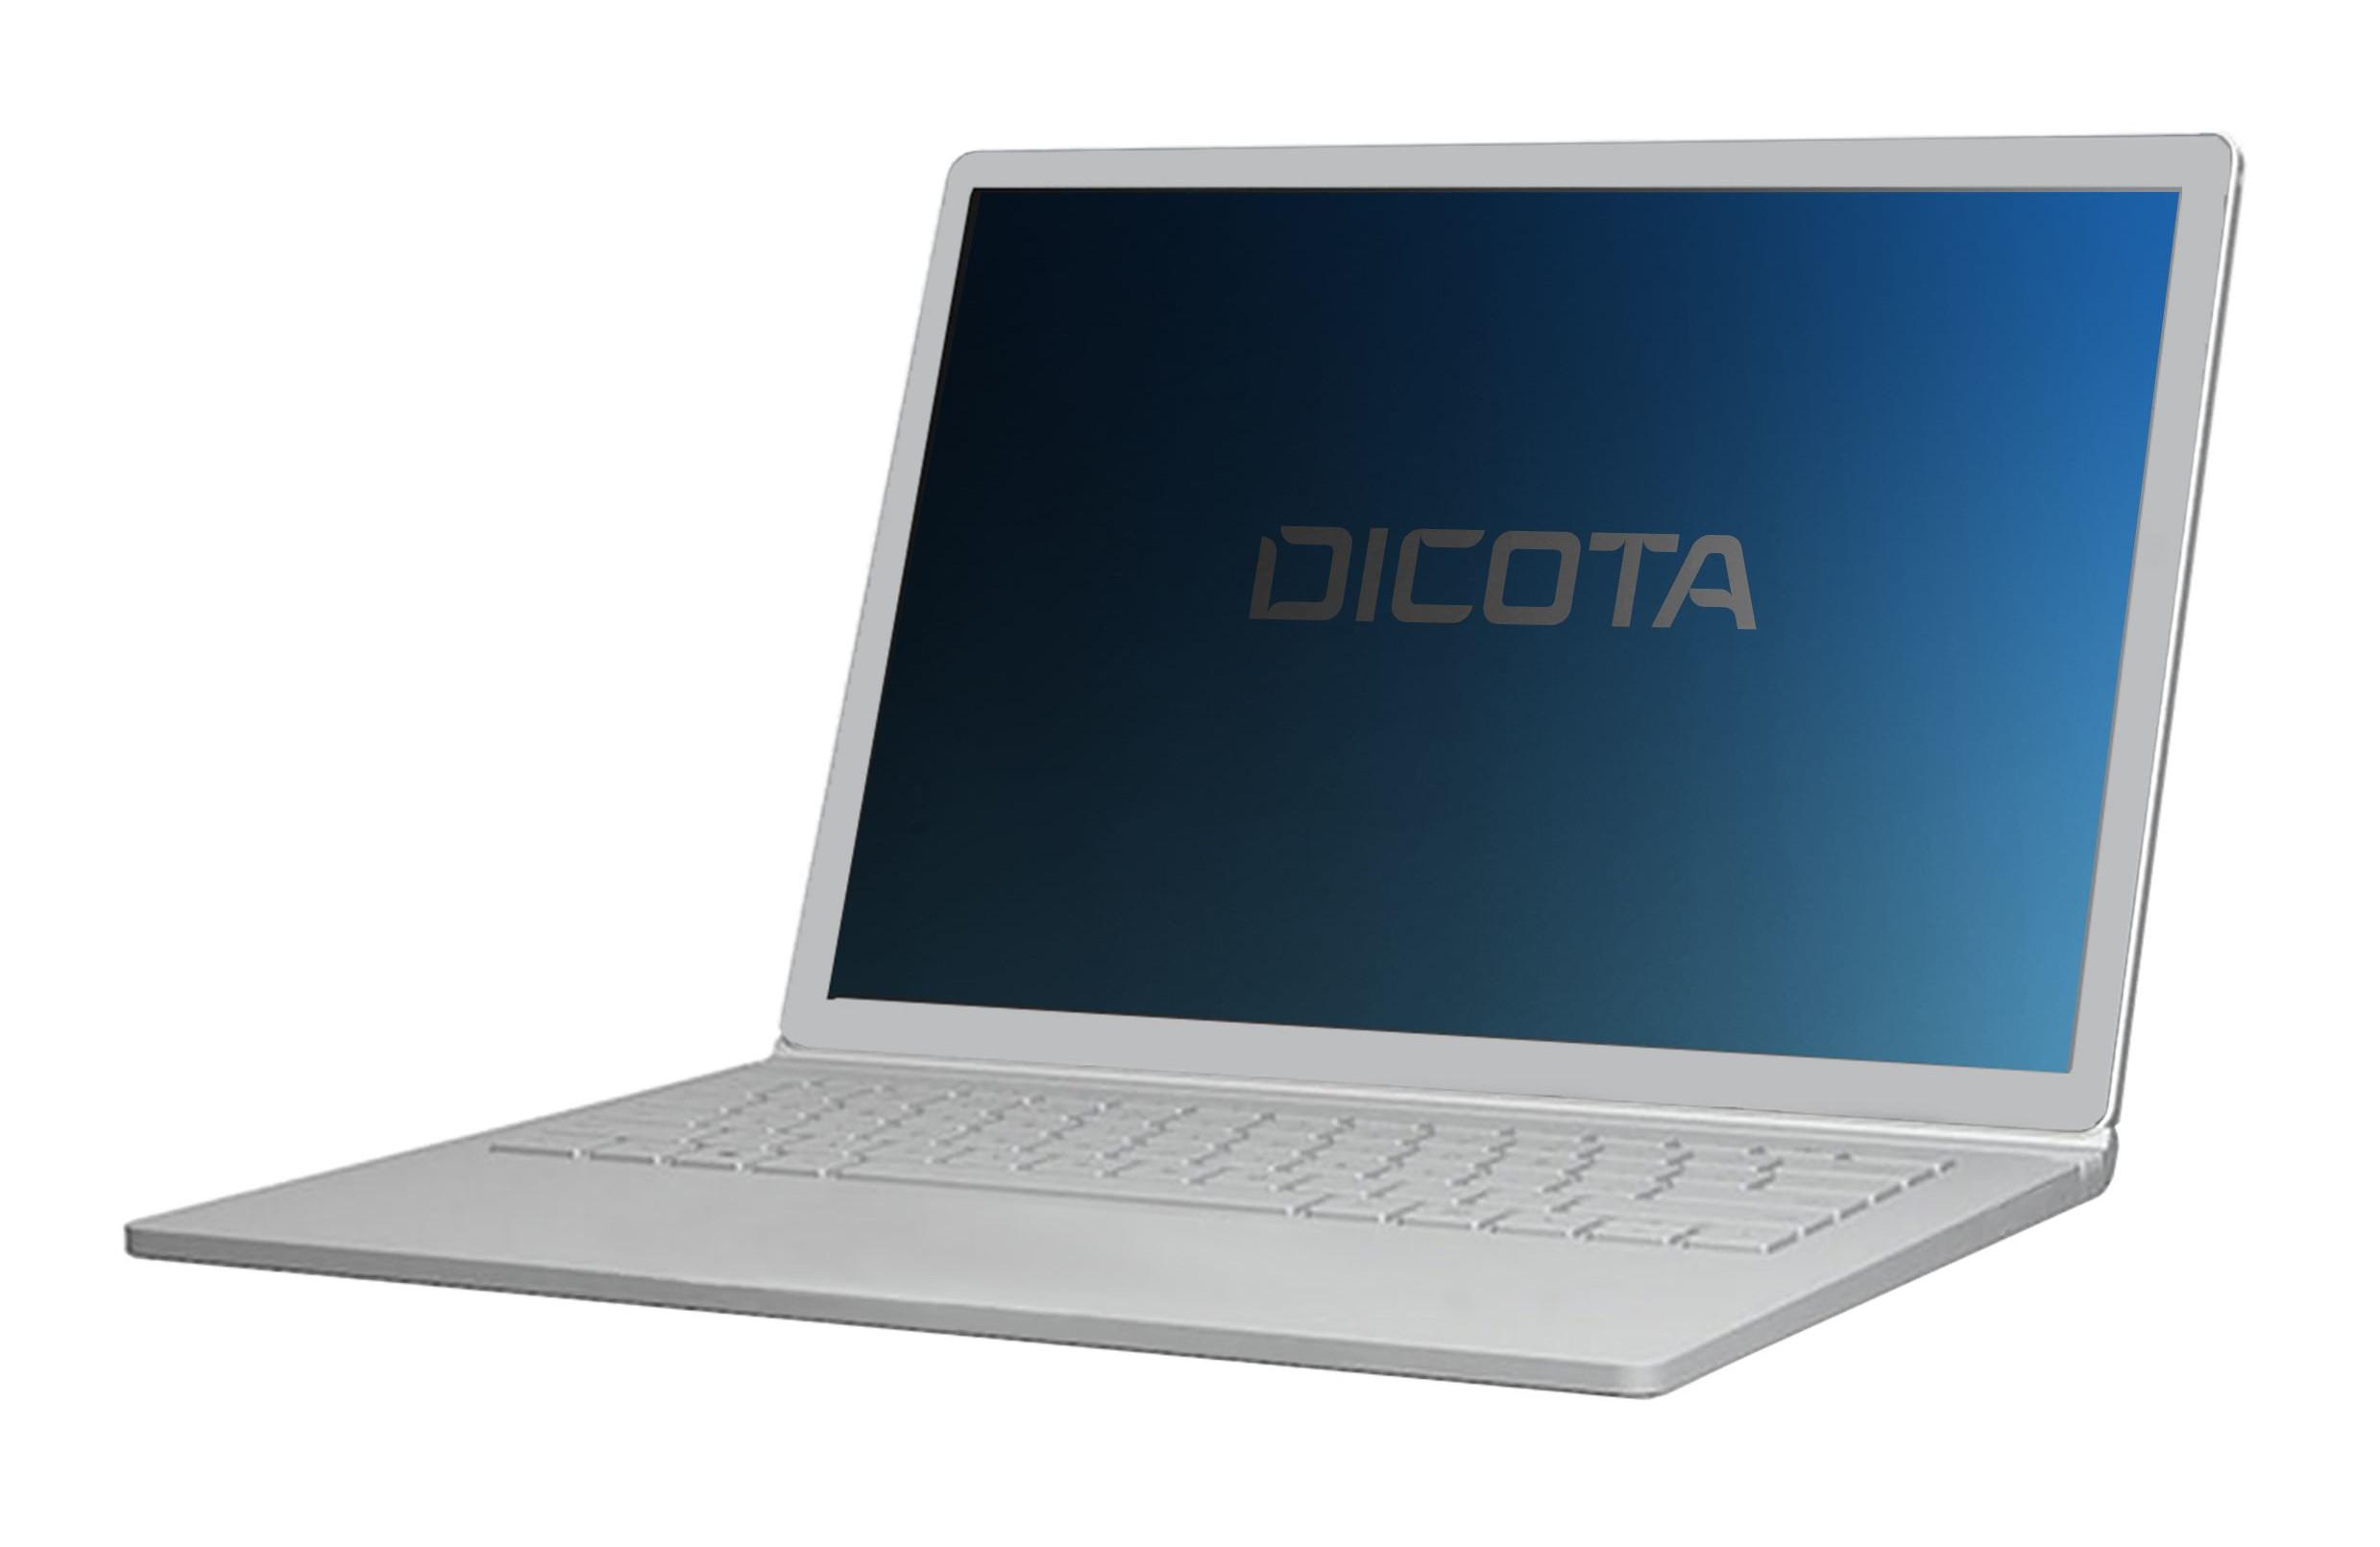 DICOTA  D70297 filtre anti-reflets pour écran et filtre de confidentialité Filtre de confidentialité sans bords pour ordinateur 38,1 cm (15") 